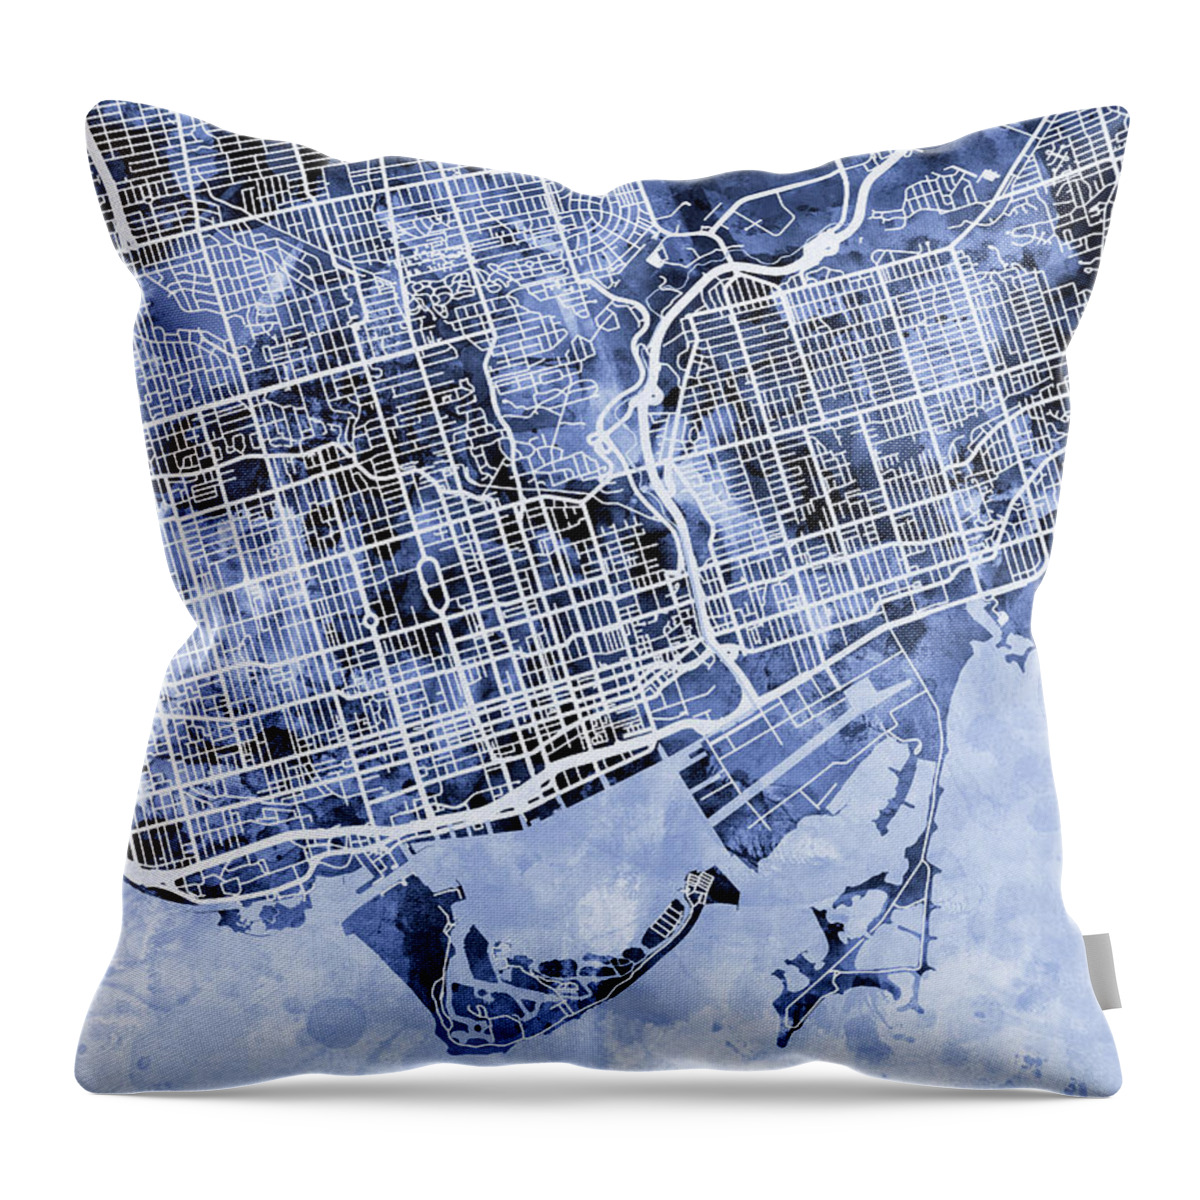 Street Map Throw Pillow featuring the digital art Toronto Street Map by Michael Tompsett